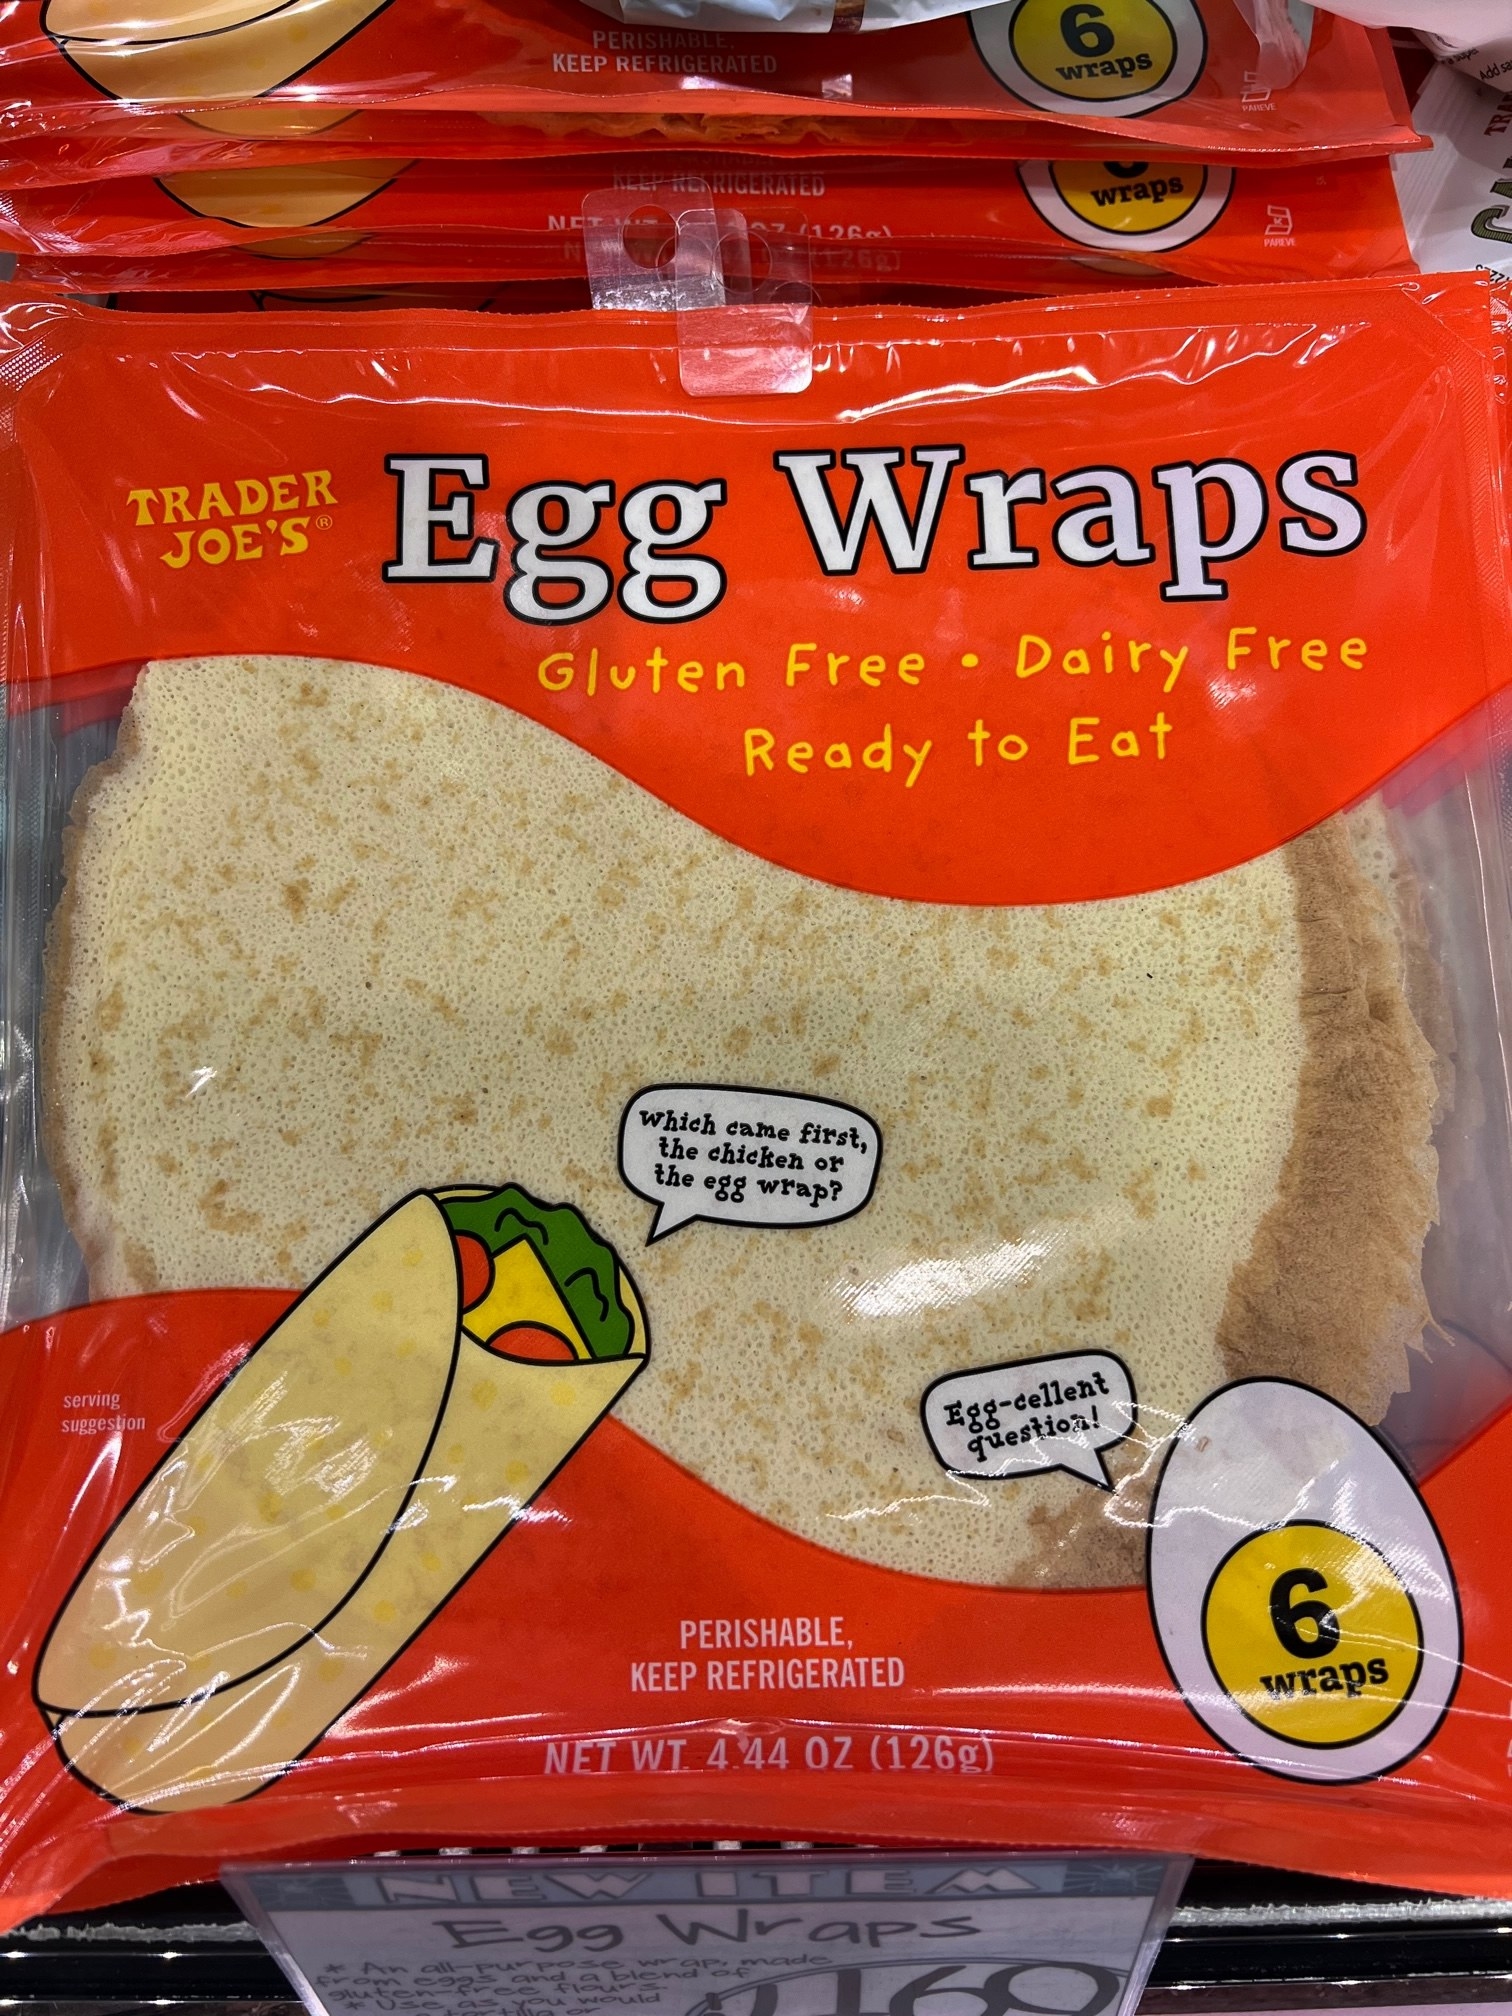 A bag of Egg Wraps